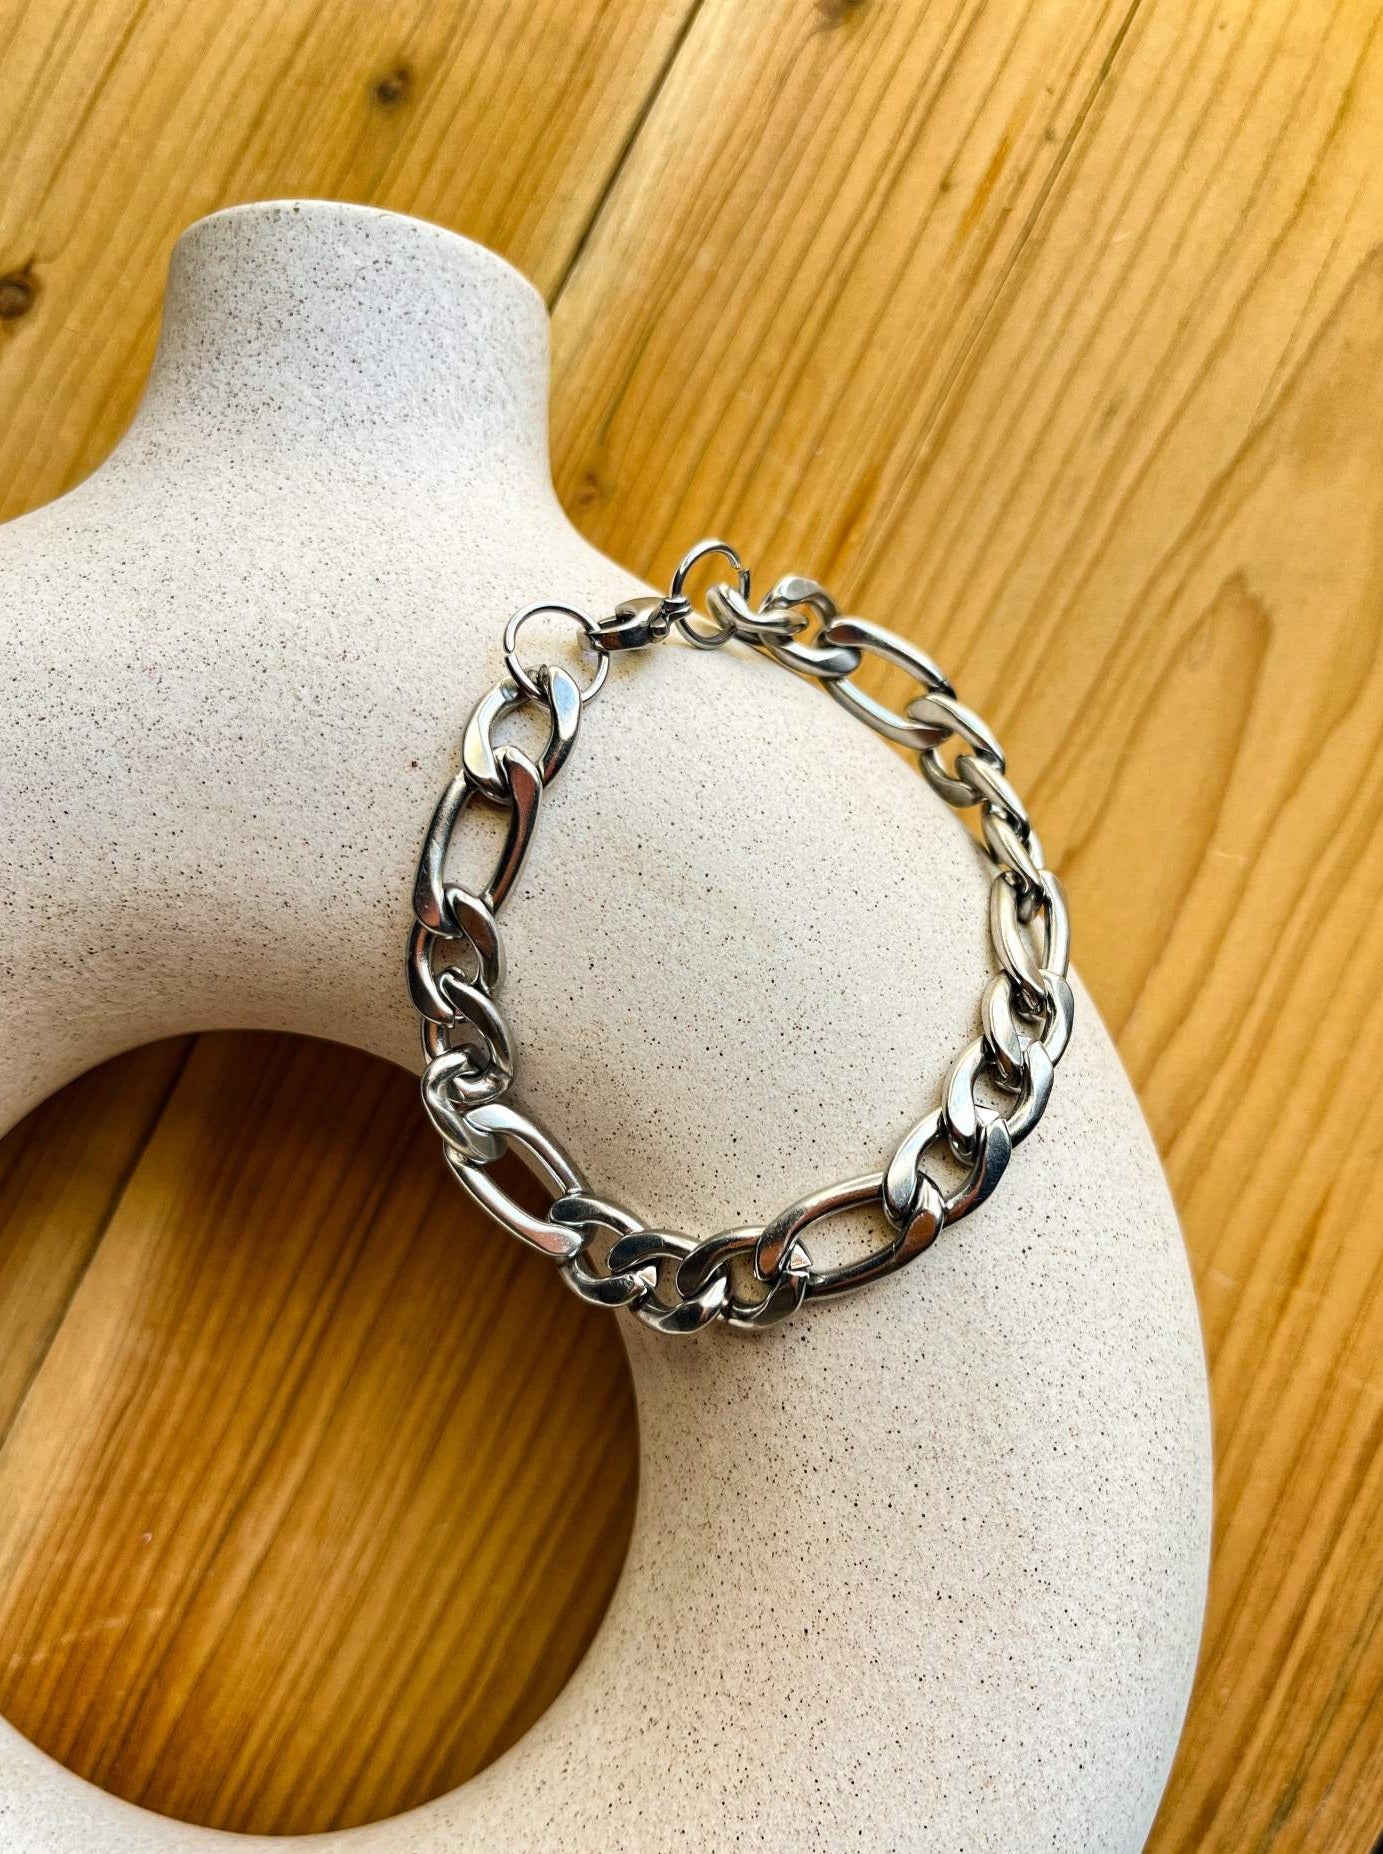 Thin Adjustable Silver Stainless Steel Bracelet | Waterproof